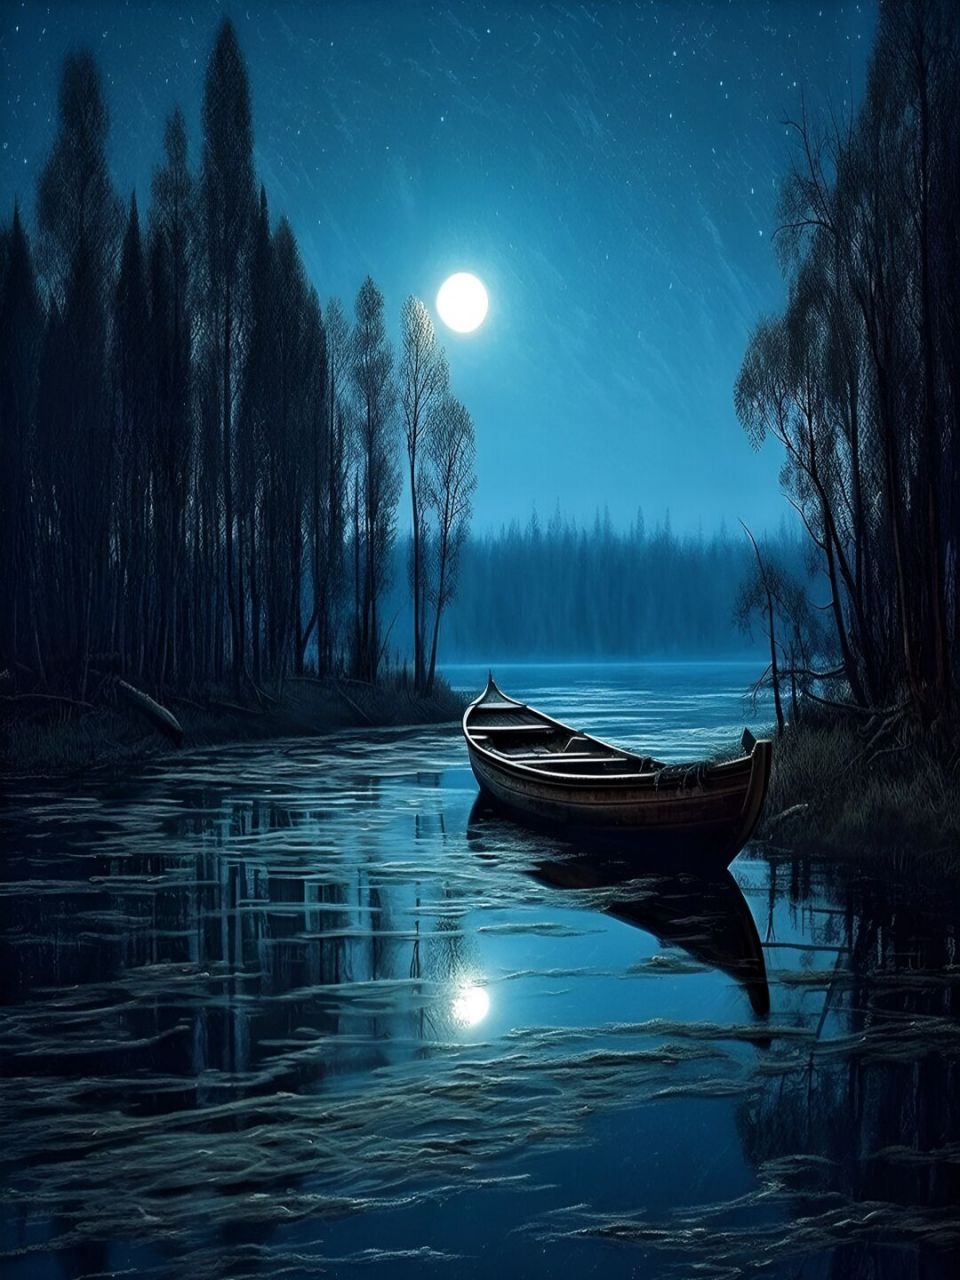 夜深了人静了,我只想好好享受这份宁静 湖畔夜色,月光洒落在水面上